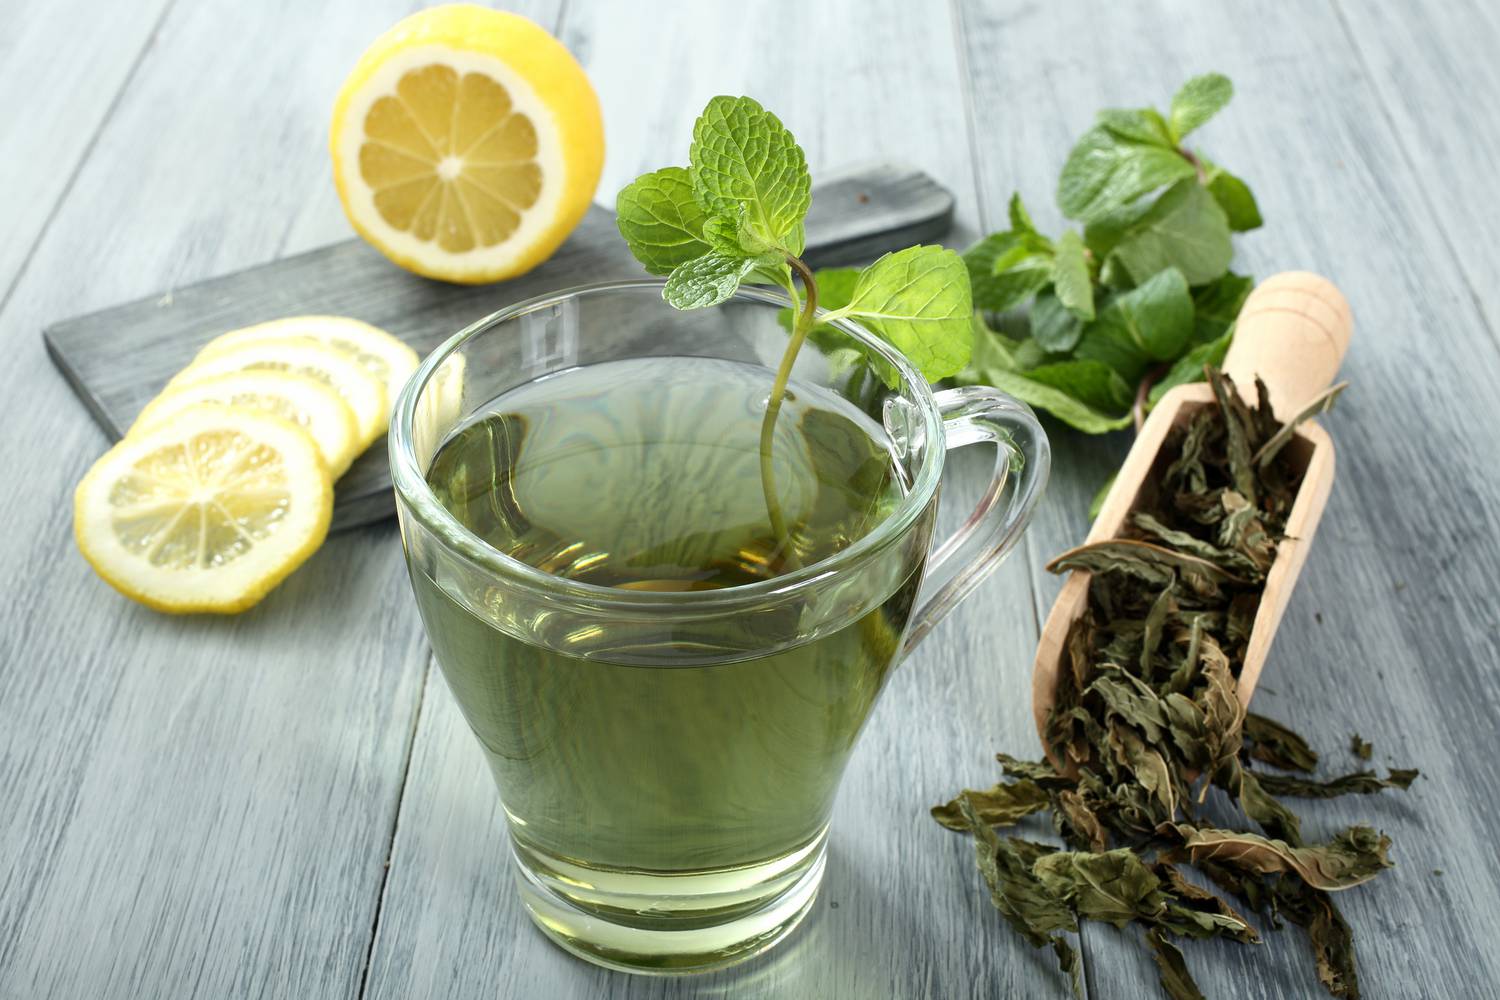 zöld tea diéta